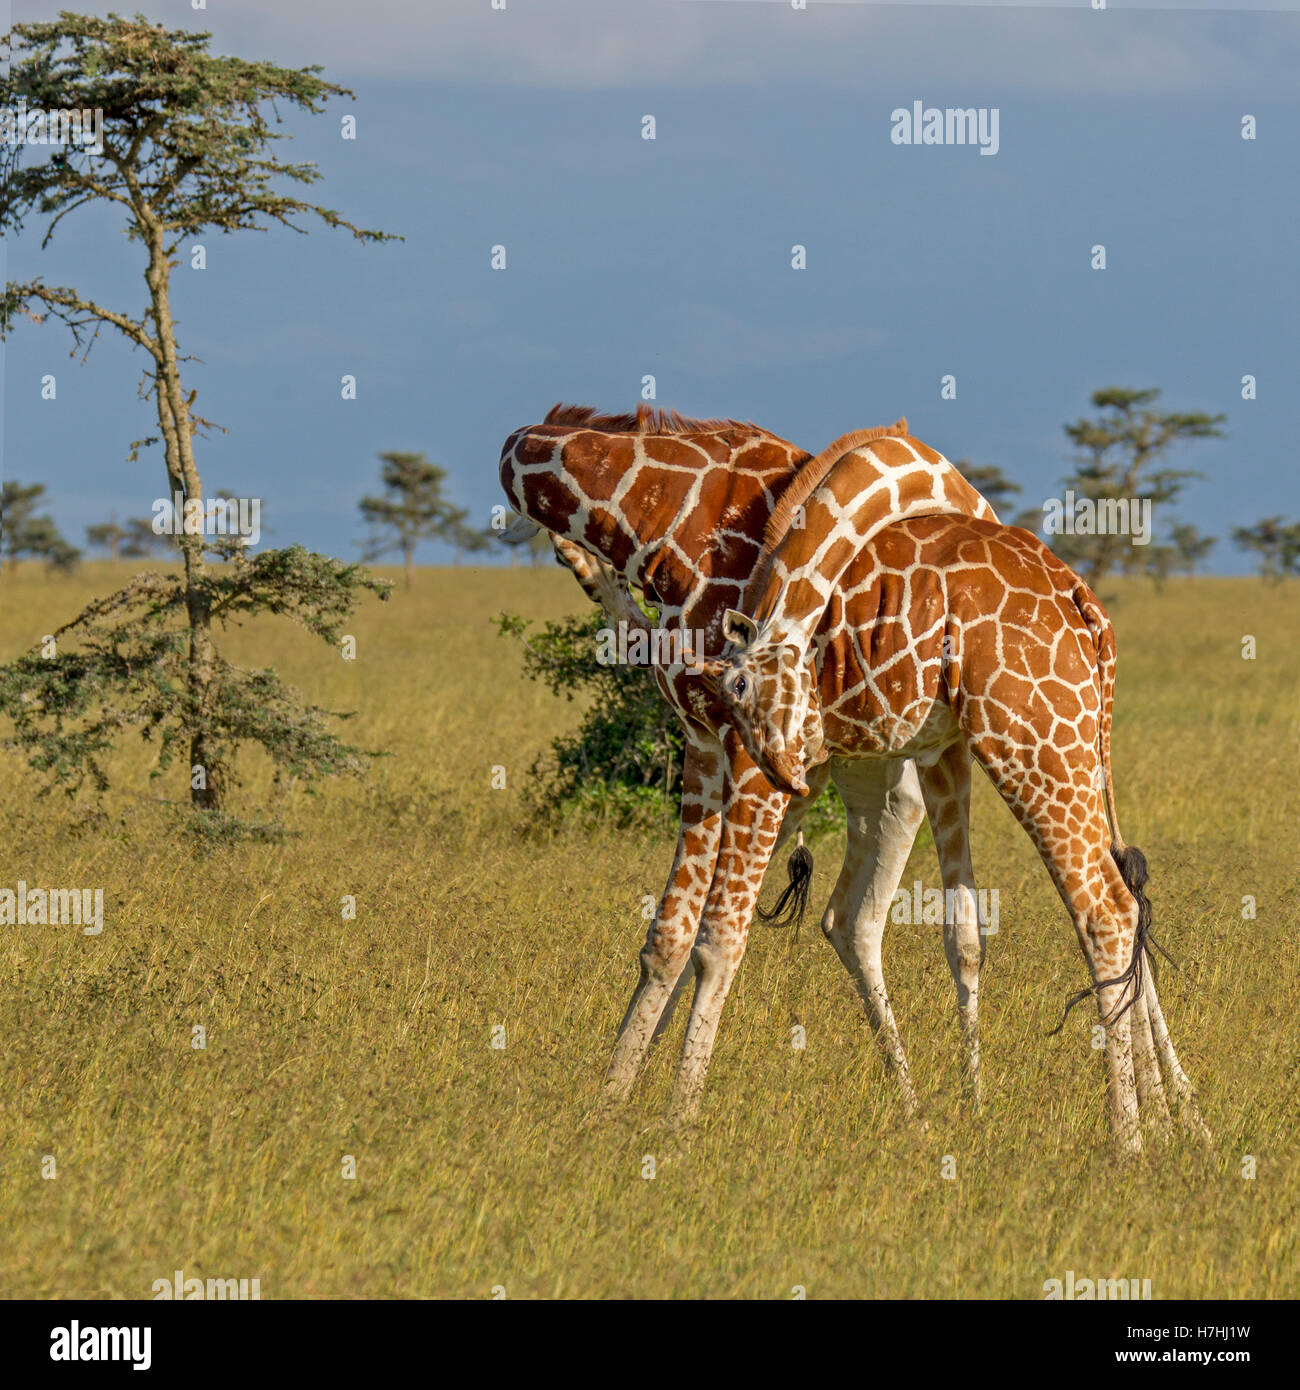 Deux giraffe réticulée Giraffa reticulata "girafe" somaliens combat aussi bien les cou enveloppé ensemble, Laikipia Kenya Afrique de l'Est 2016 Banque D'Images